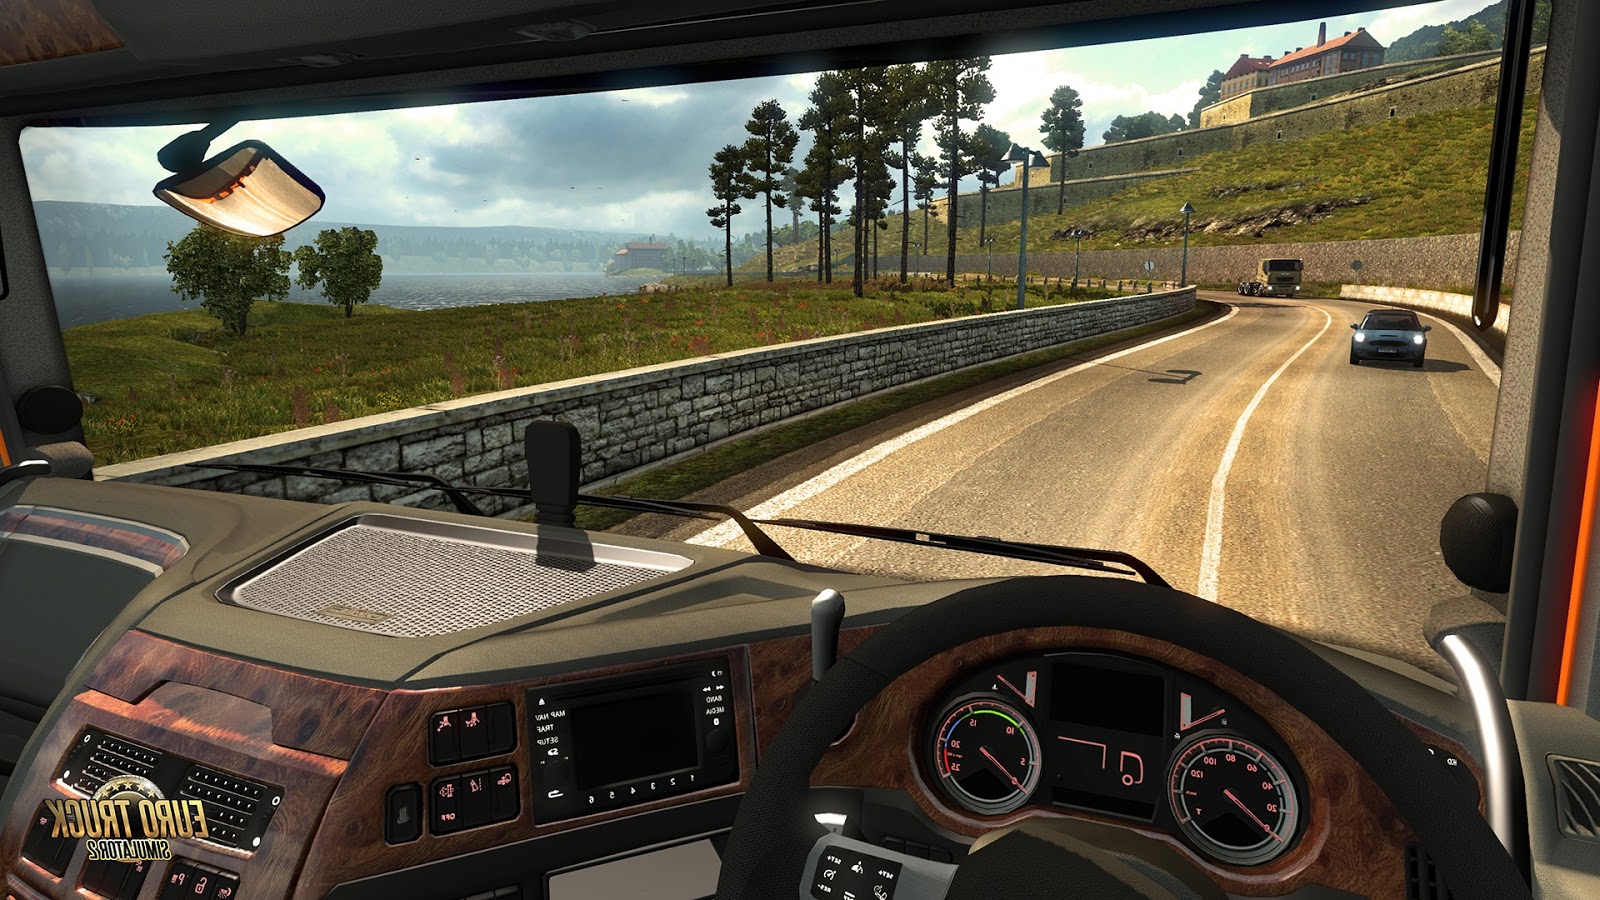 euro truck simulator 2 crack download